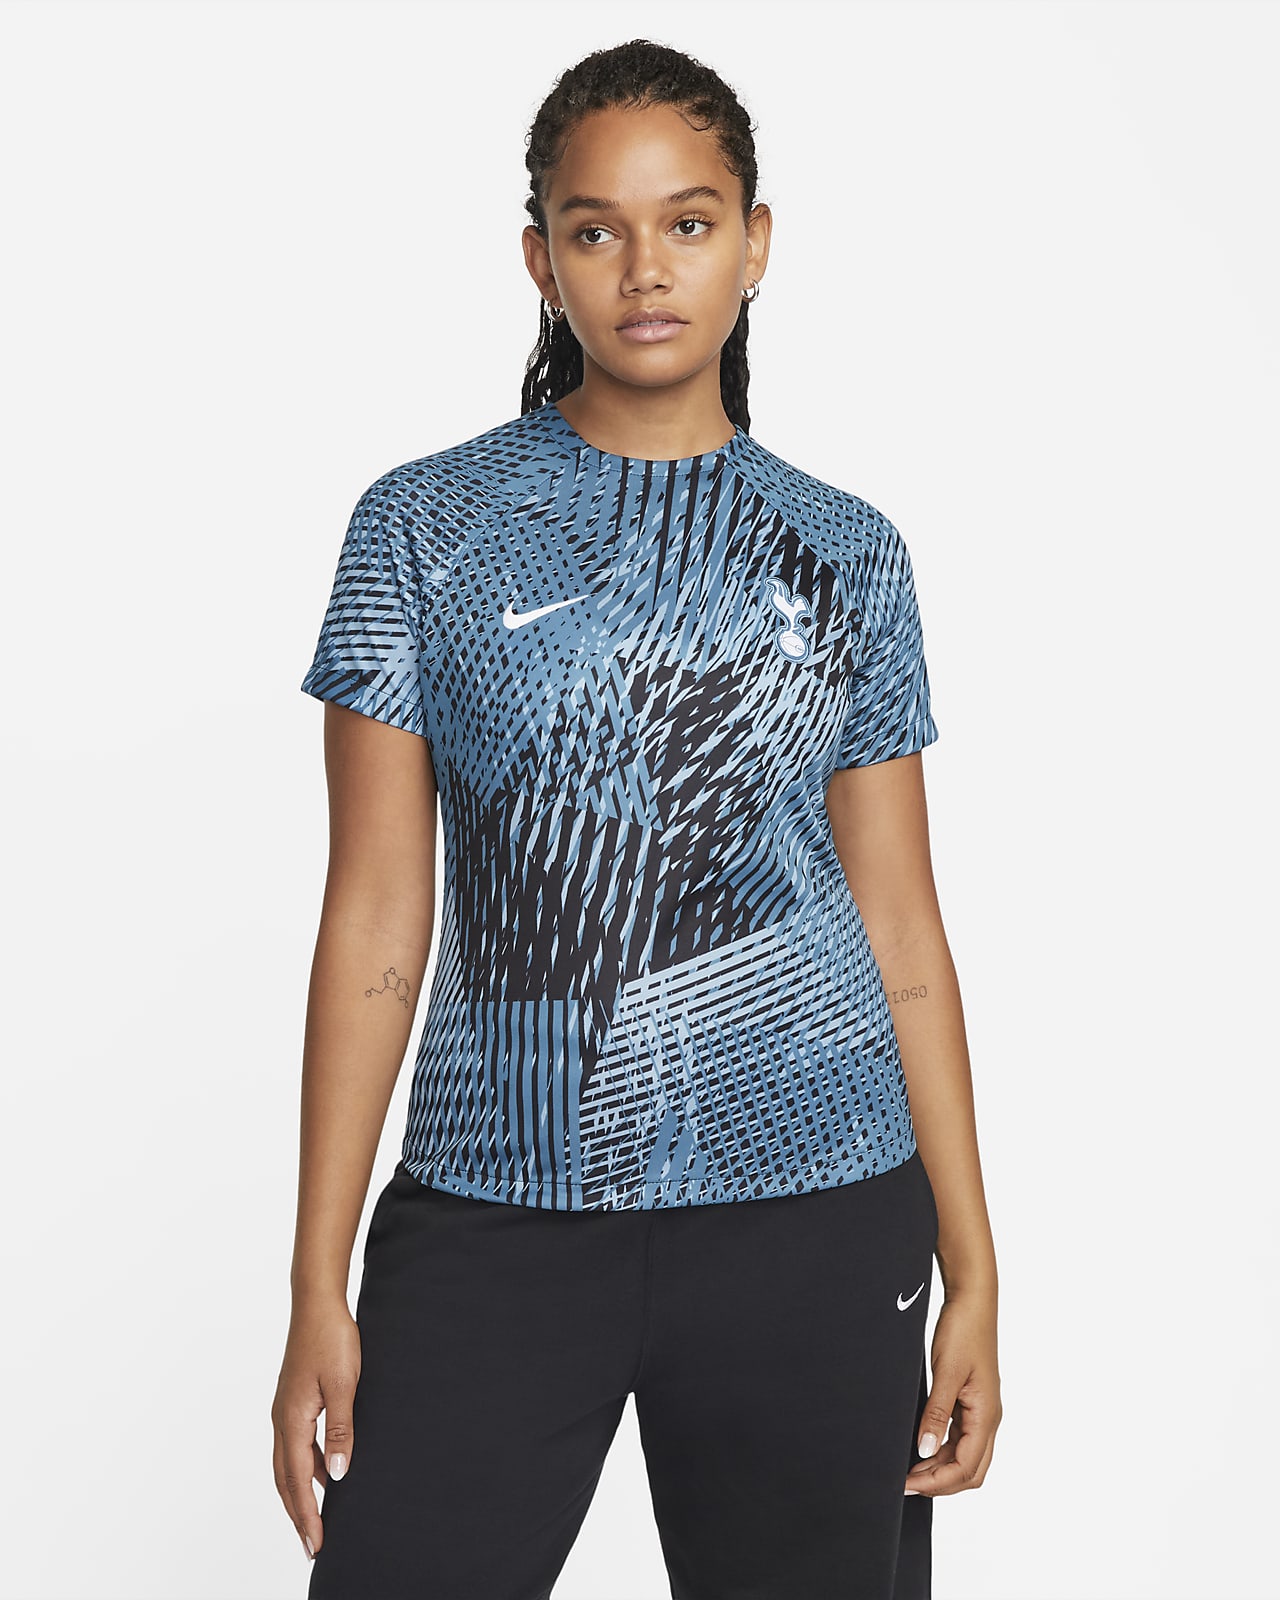 Tottenham Hotspur Nike Dri-FIT Pre-Match-fodboldtrøje til kvinder